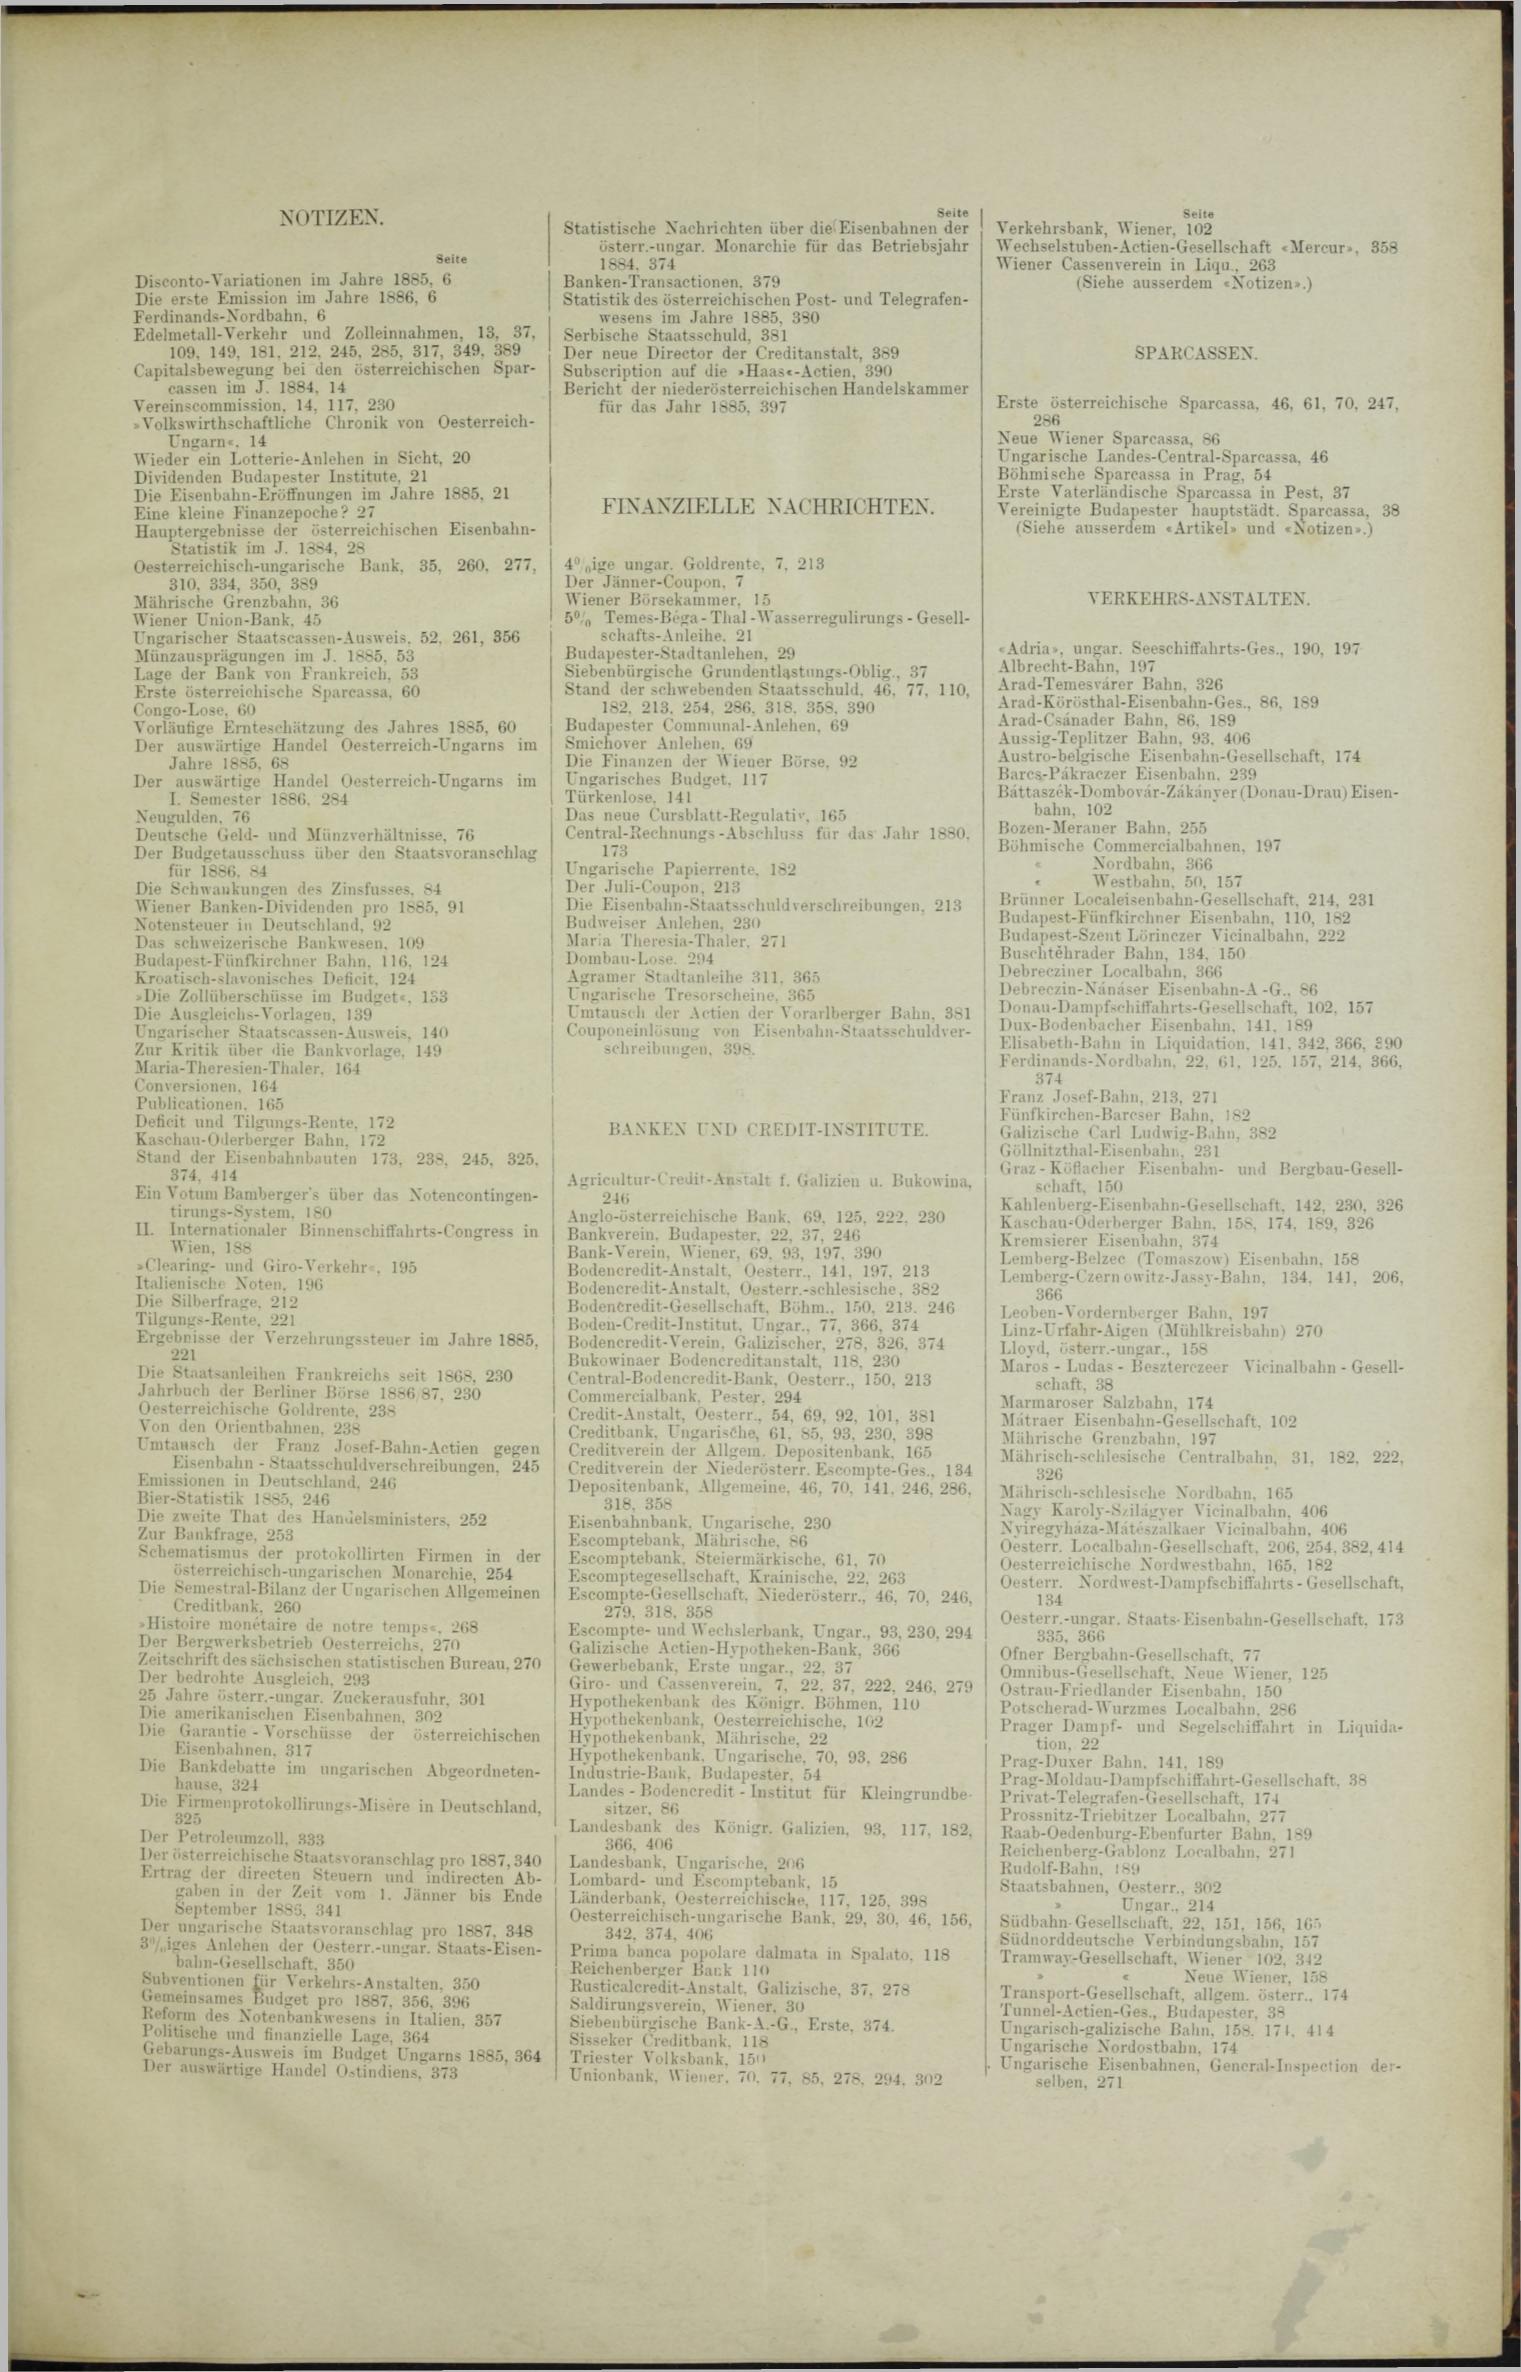 Der Tresor 04.02.1886 - Seite 13